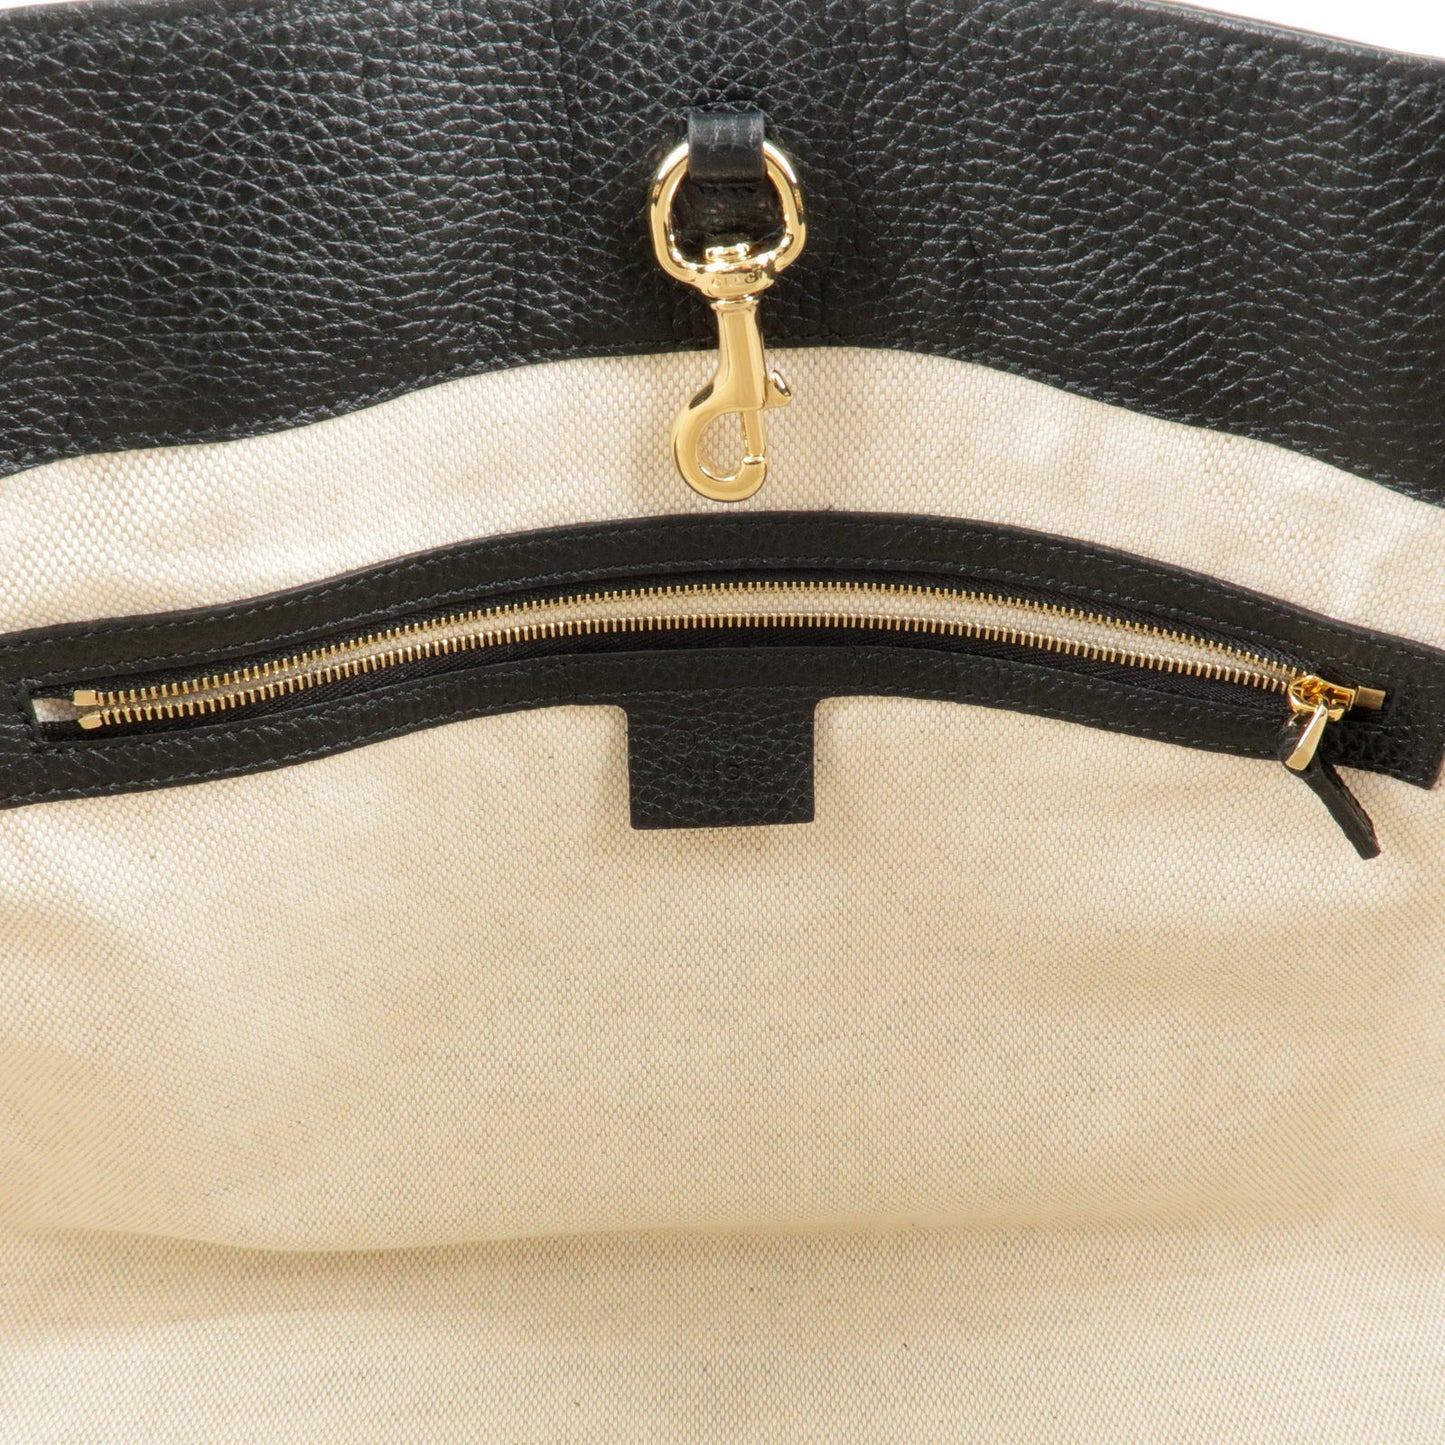 GUCCI SOHO Logo Leather Chain Shoulder Bag Tote Bag Black 536196